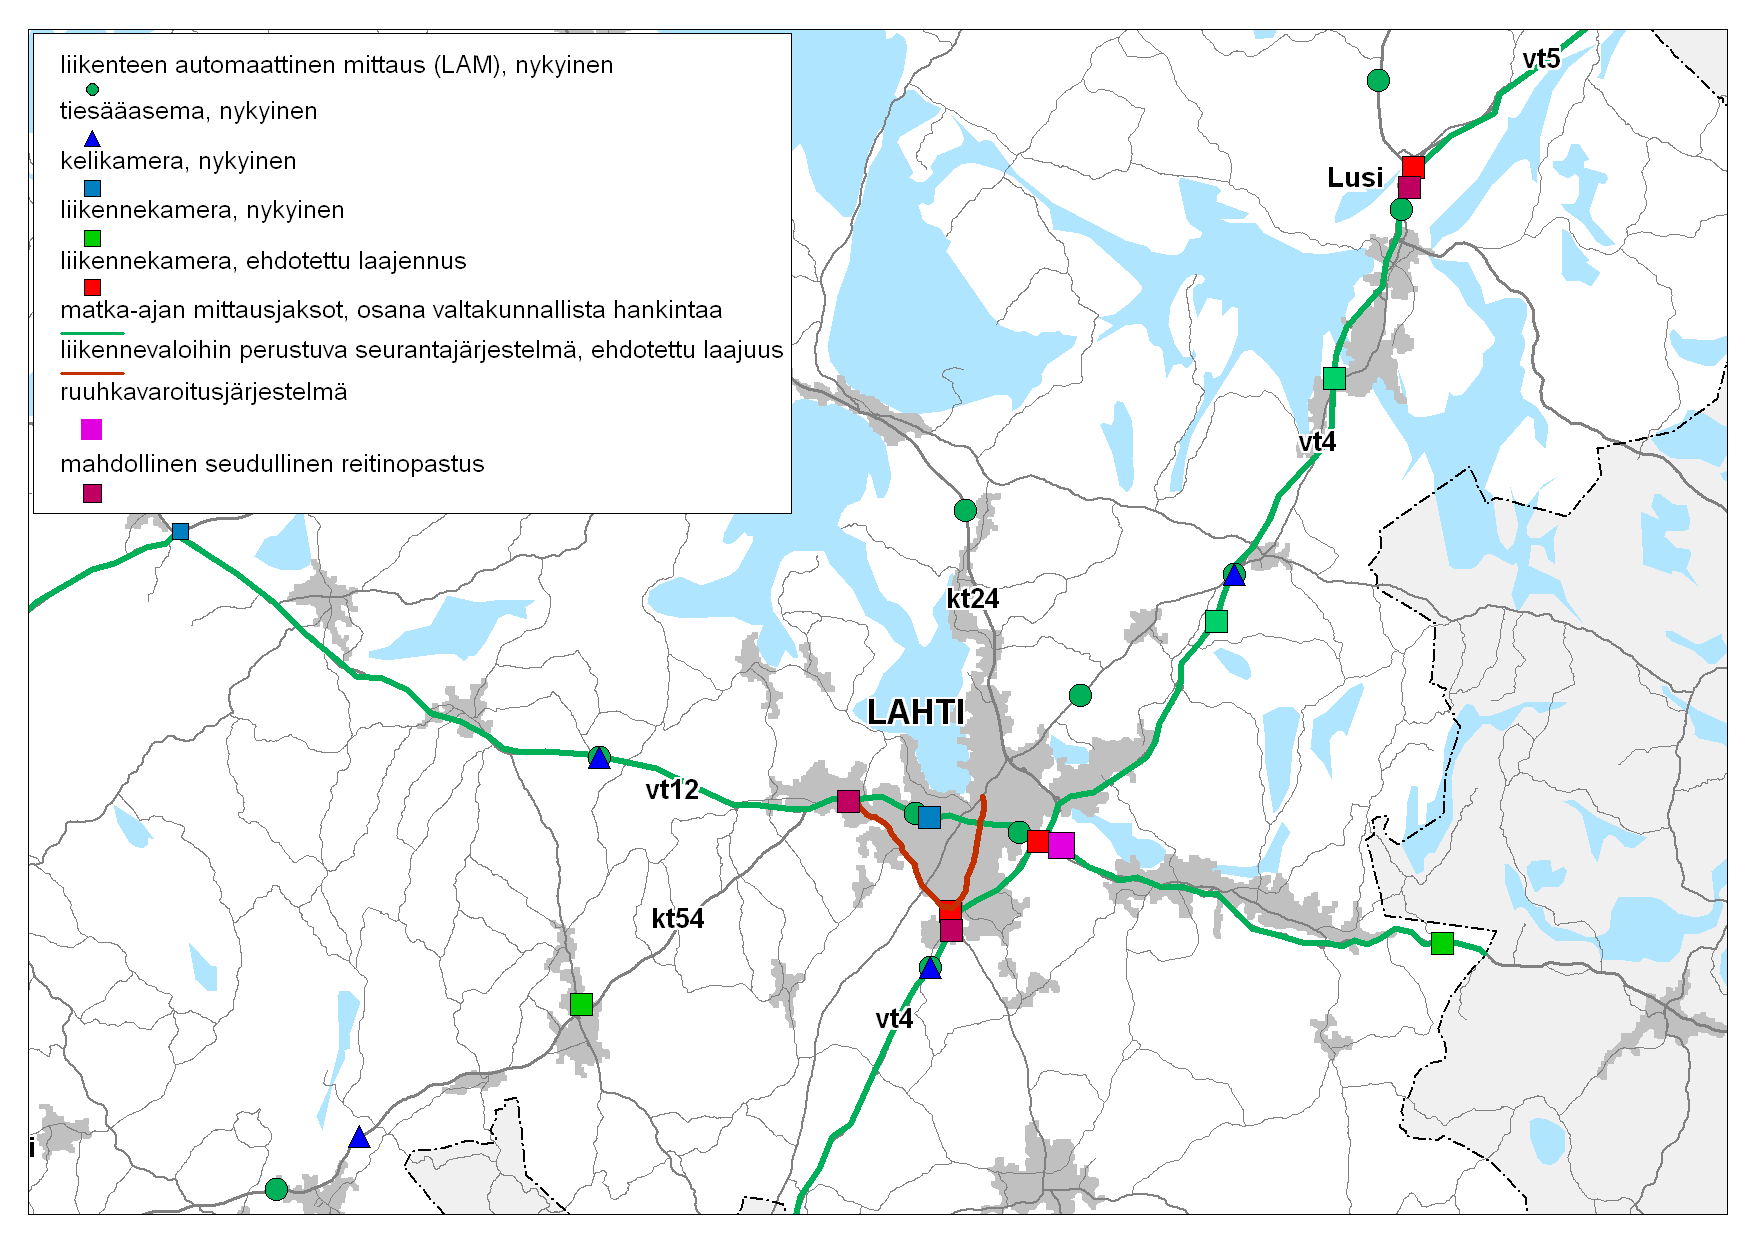 Hämeen tiepiirin liikenteen hallinta, toimenpideohjelma 2007-2015 63 Kuva 22. Lahden seudun liikenteen hallintajärjestelmät.